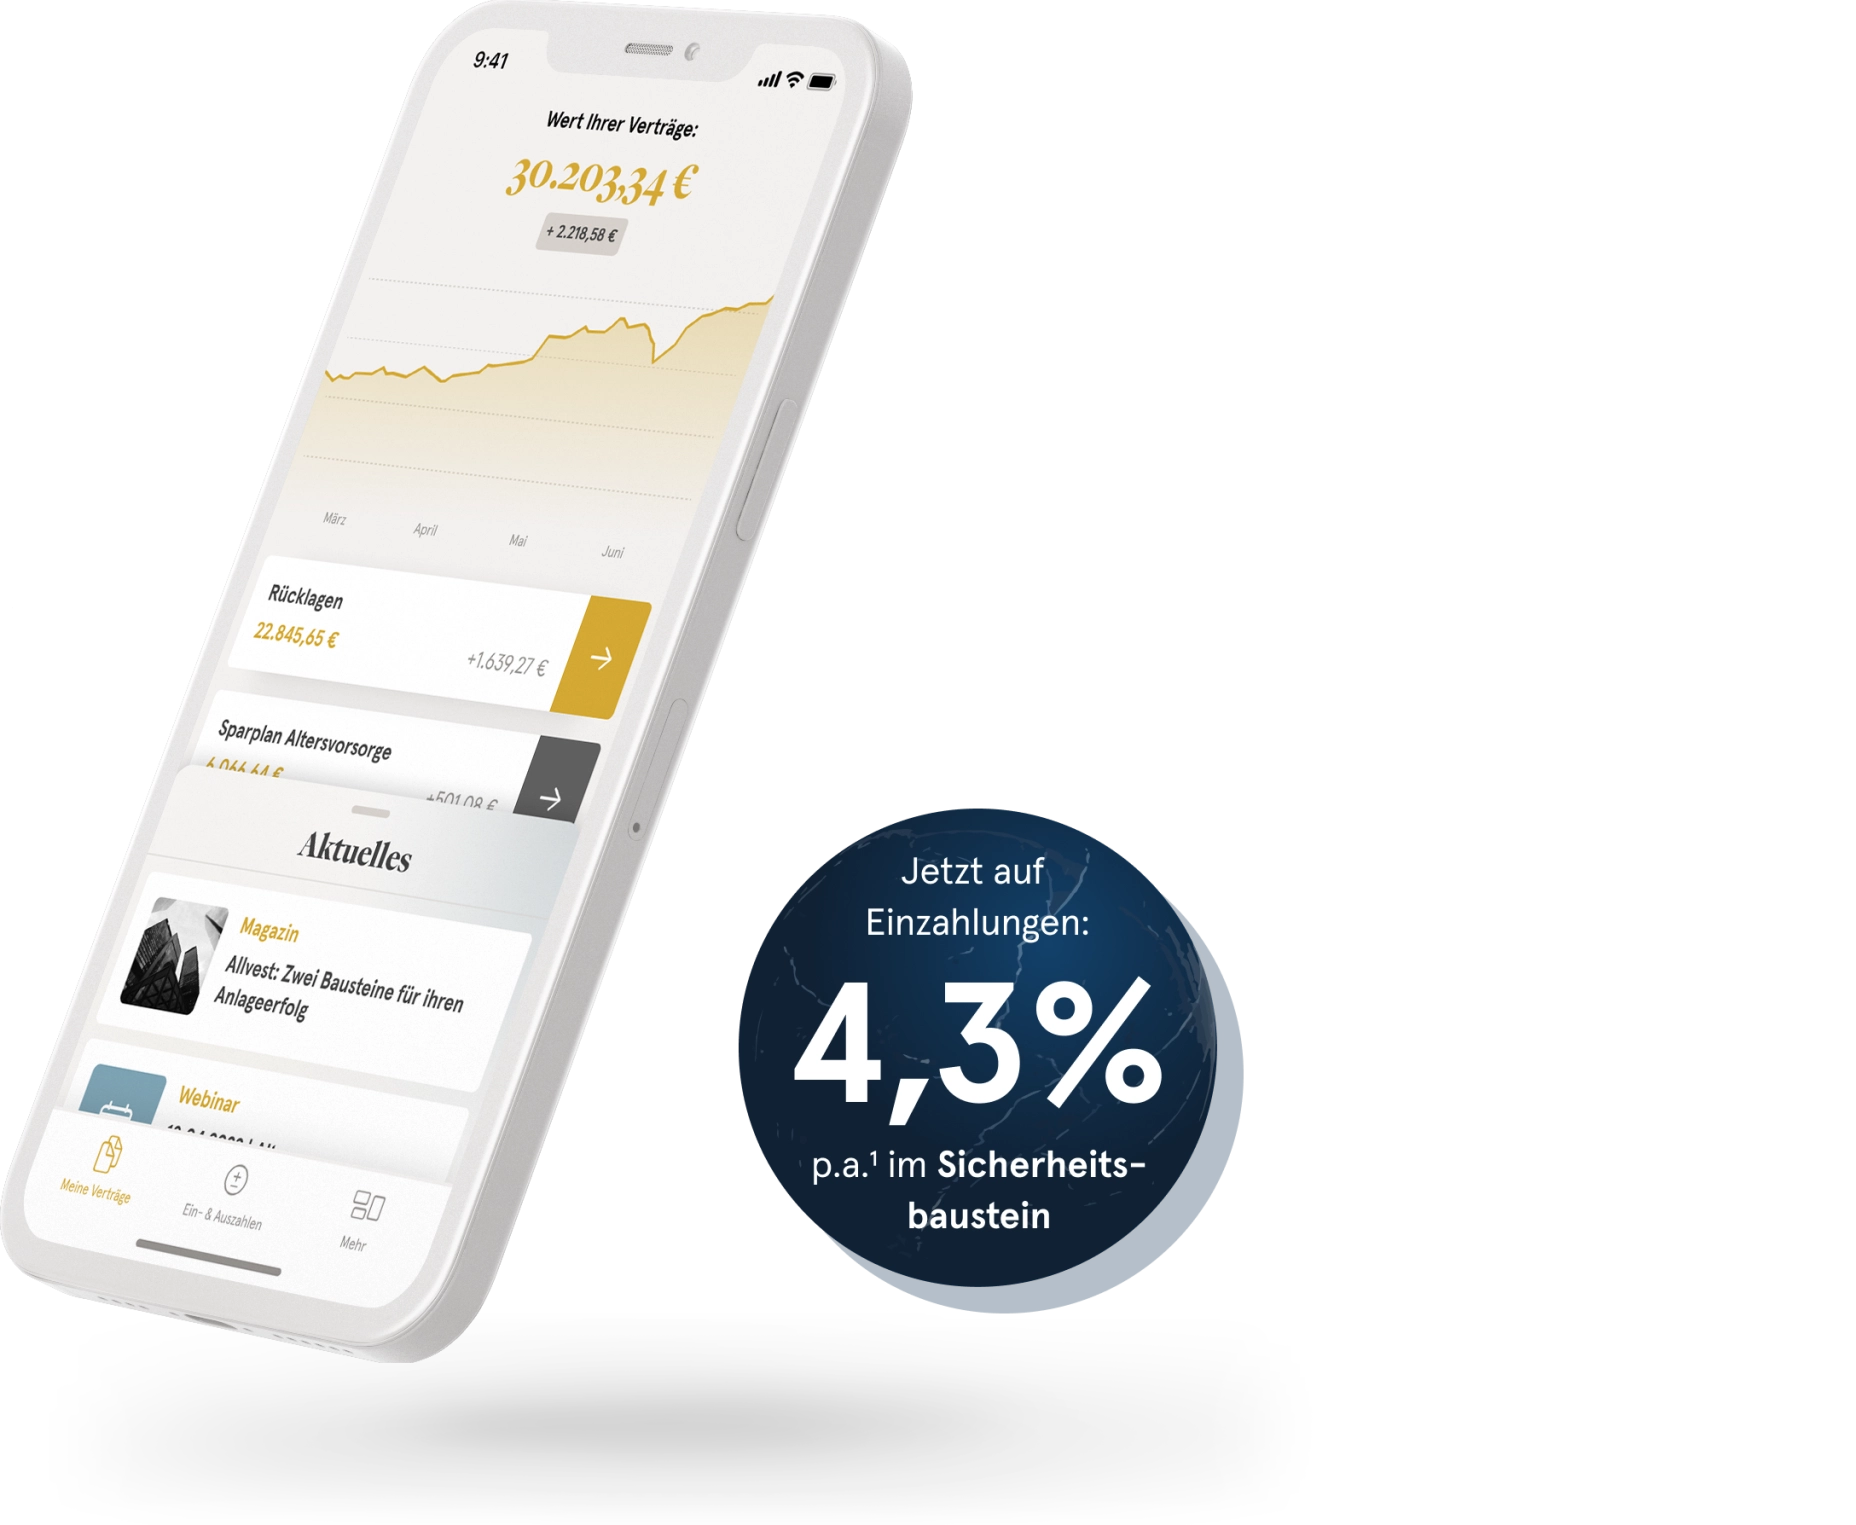 Allvest App auf Smartphone und Text: "Jetzt auf  Einzahlungen: 3,8 % p.a. im Sicherheitsbaustein"